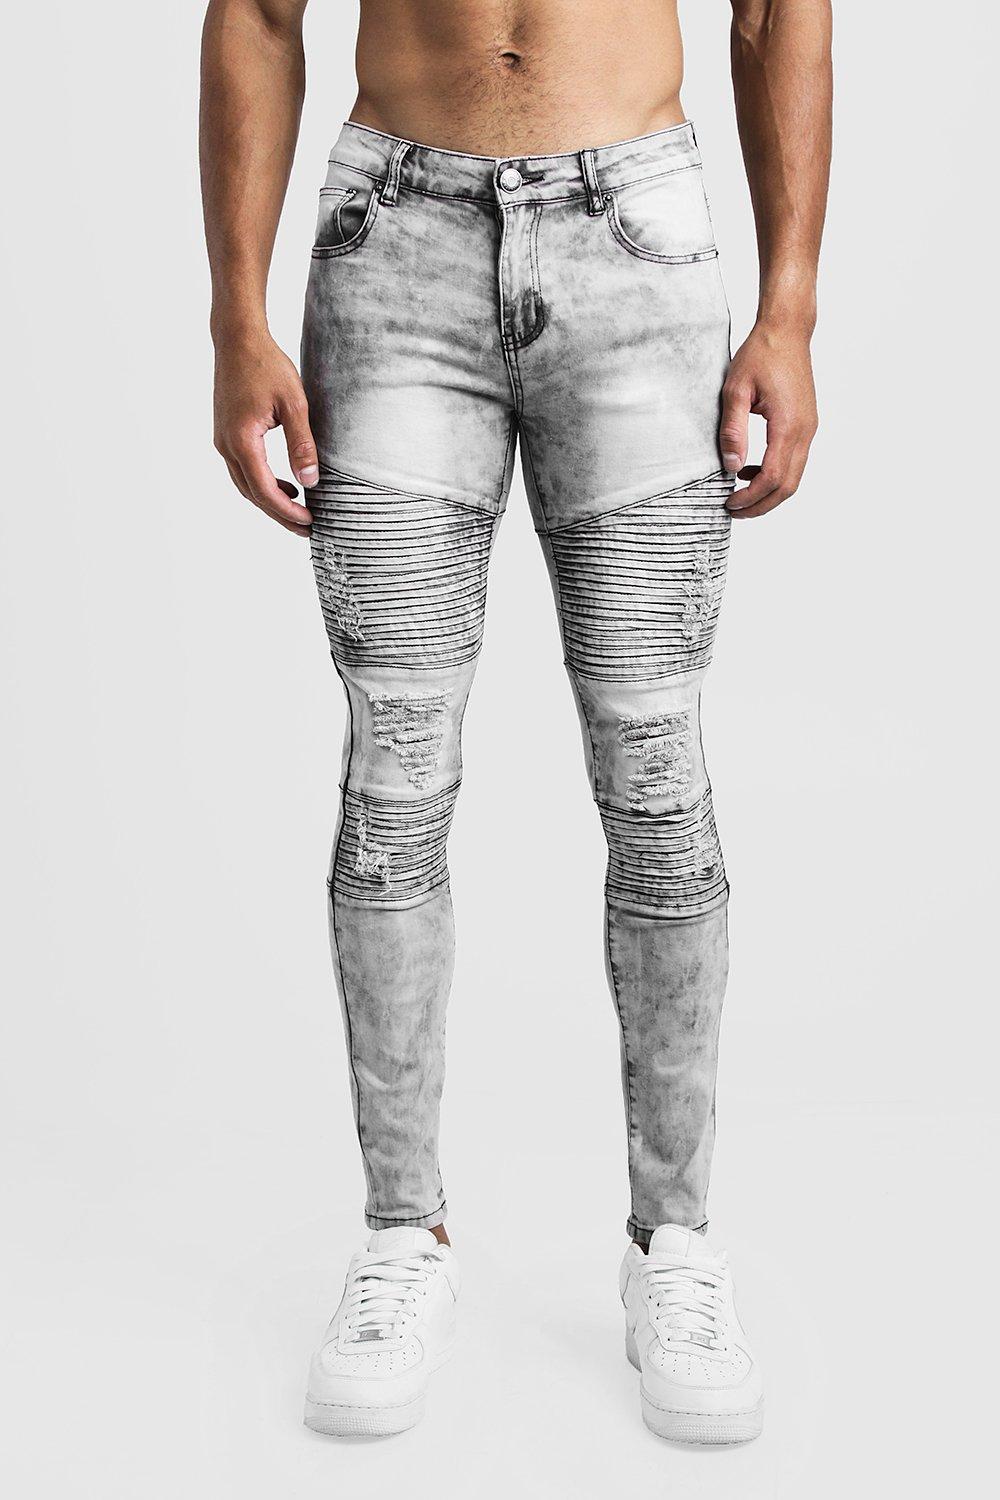 gray biker jeans